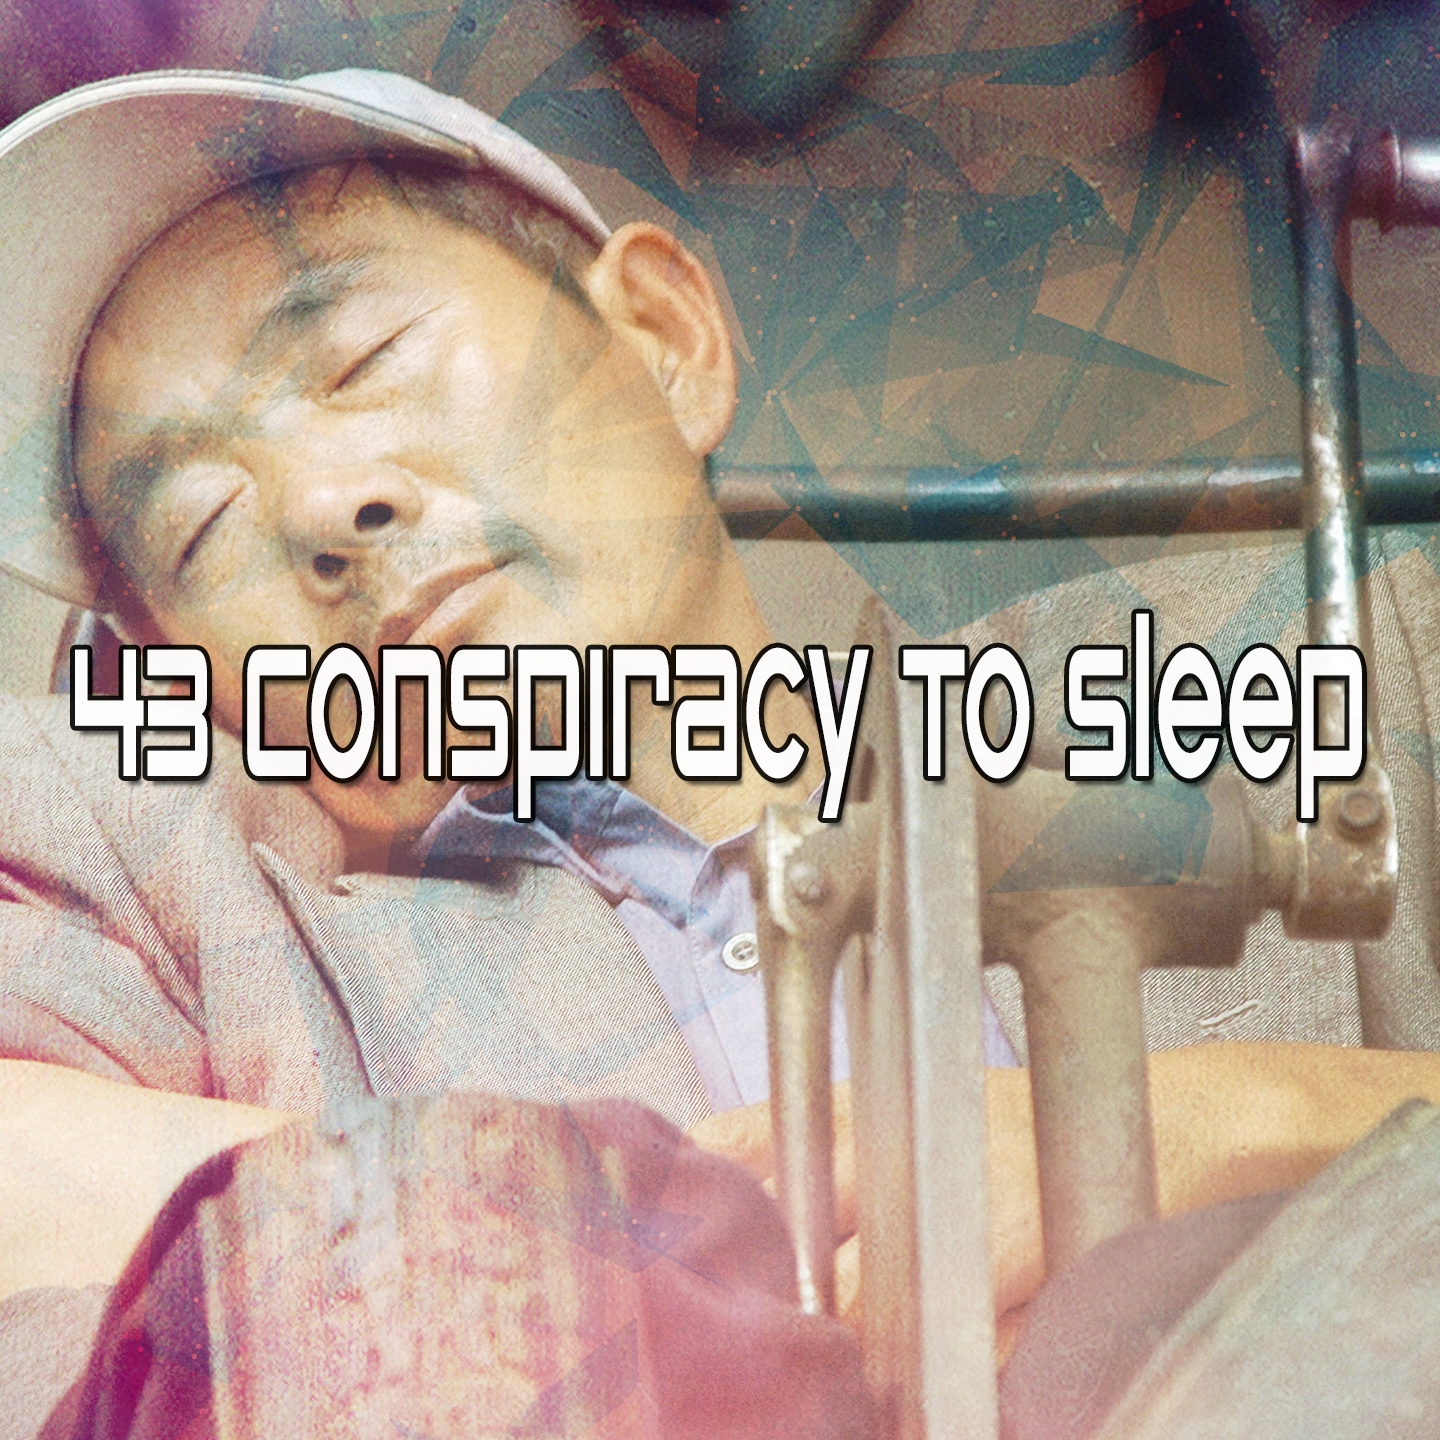 43 Conspiracy To Sleep